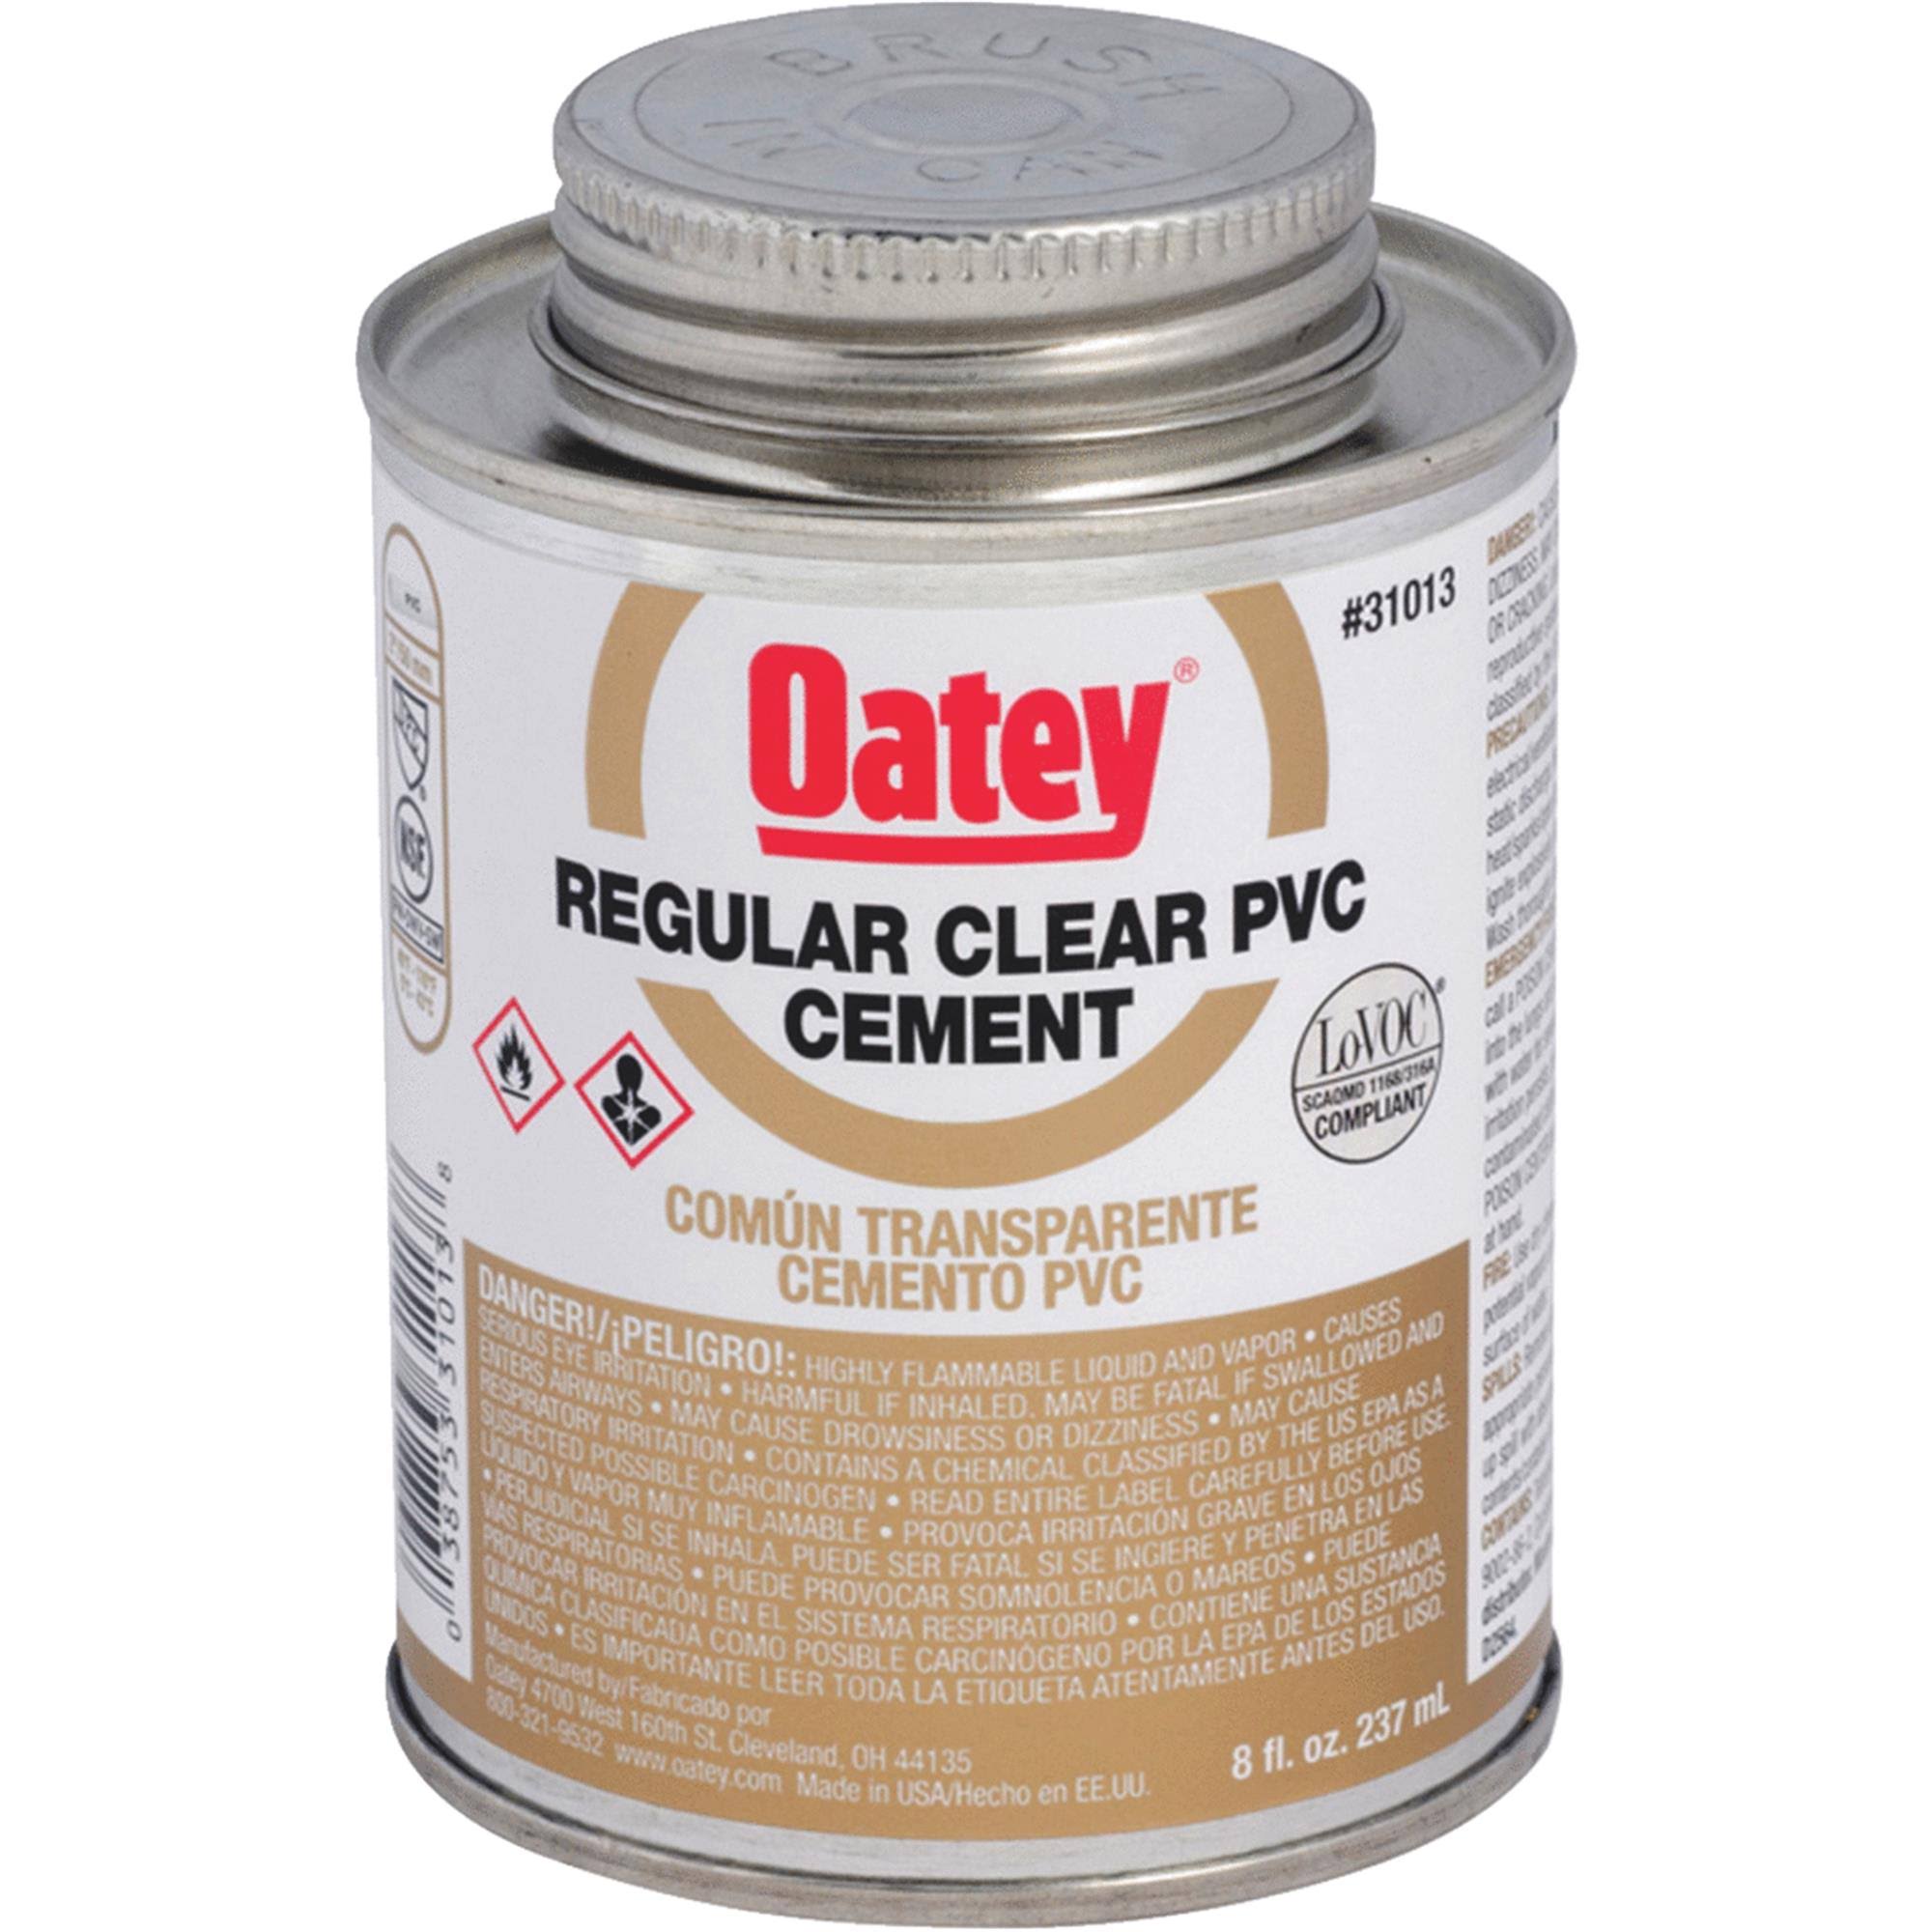 Oatey PVC Cement - Clear, 237ml